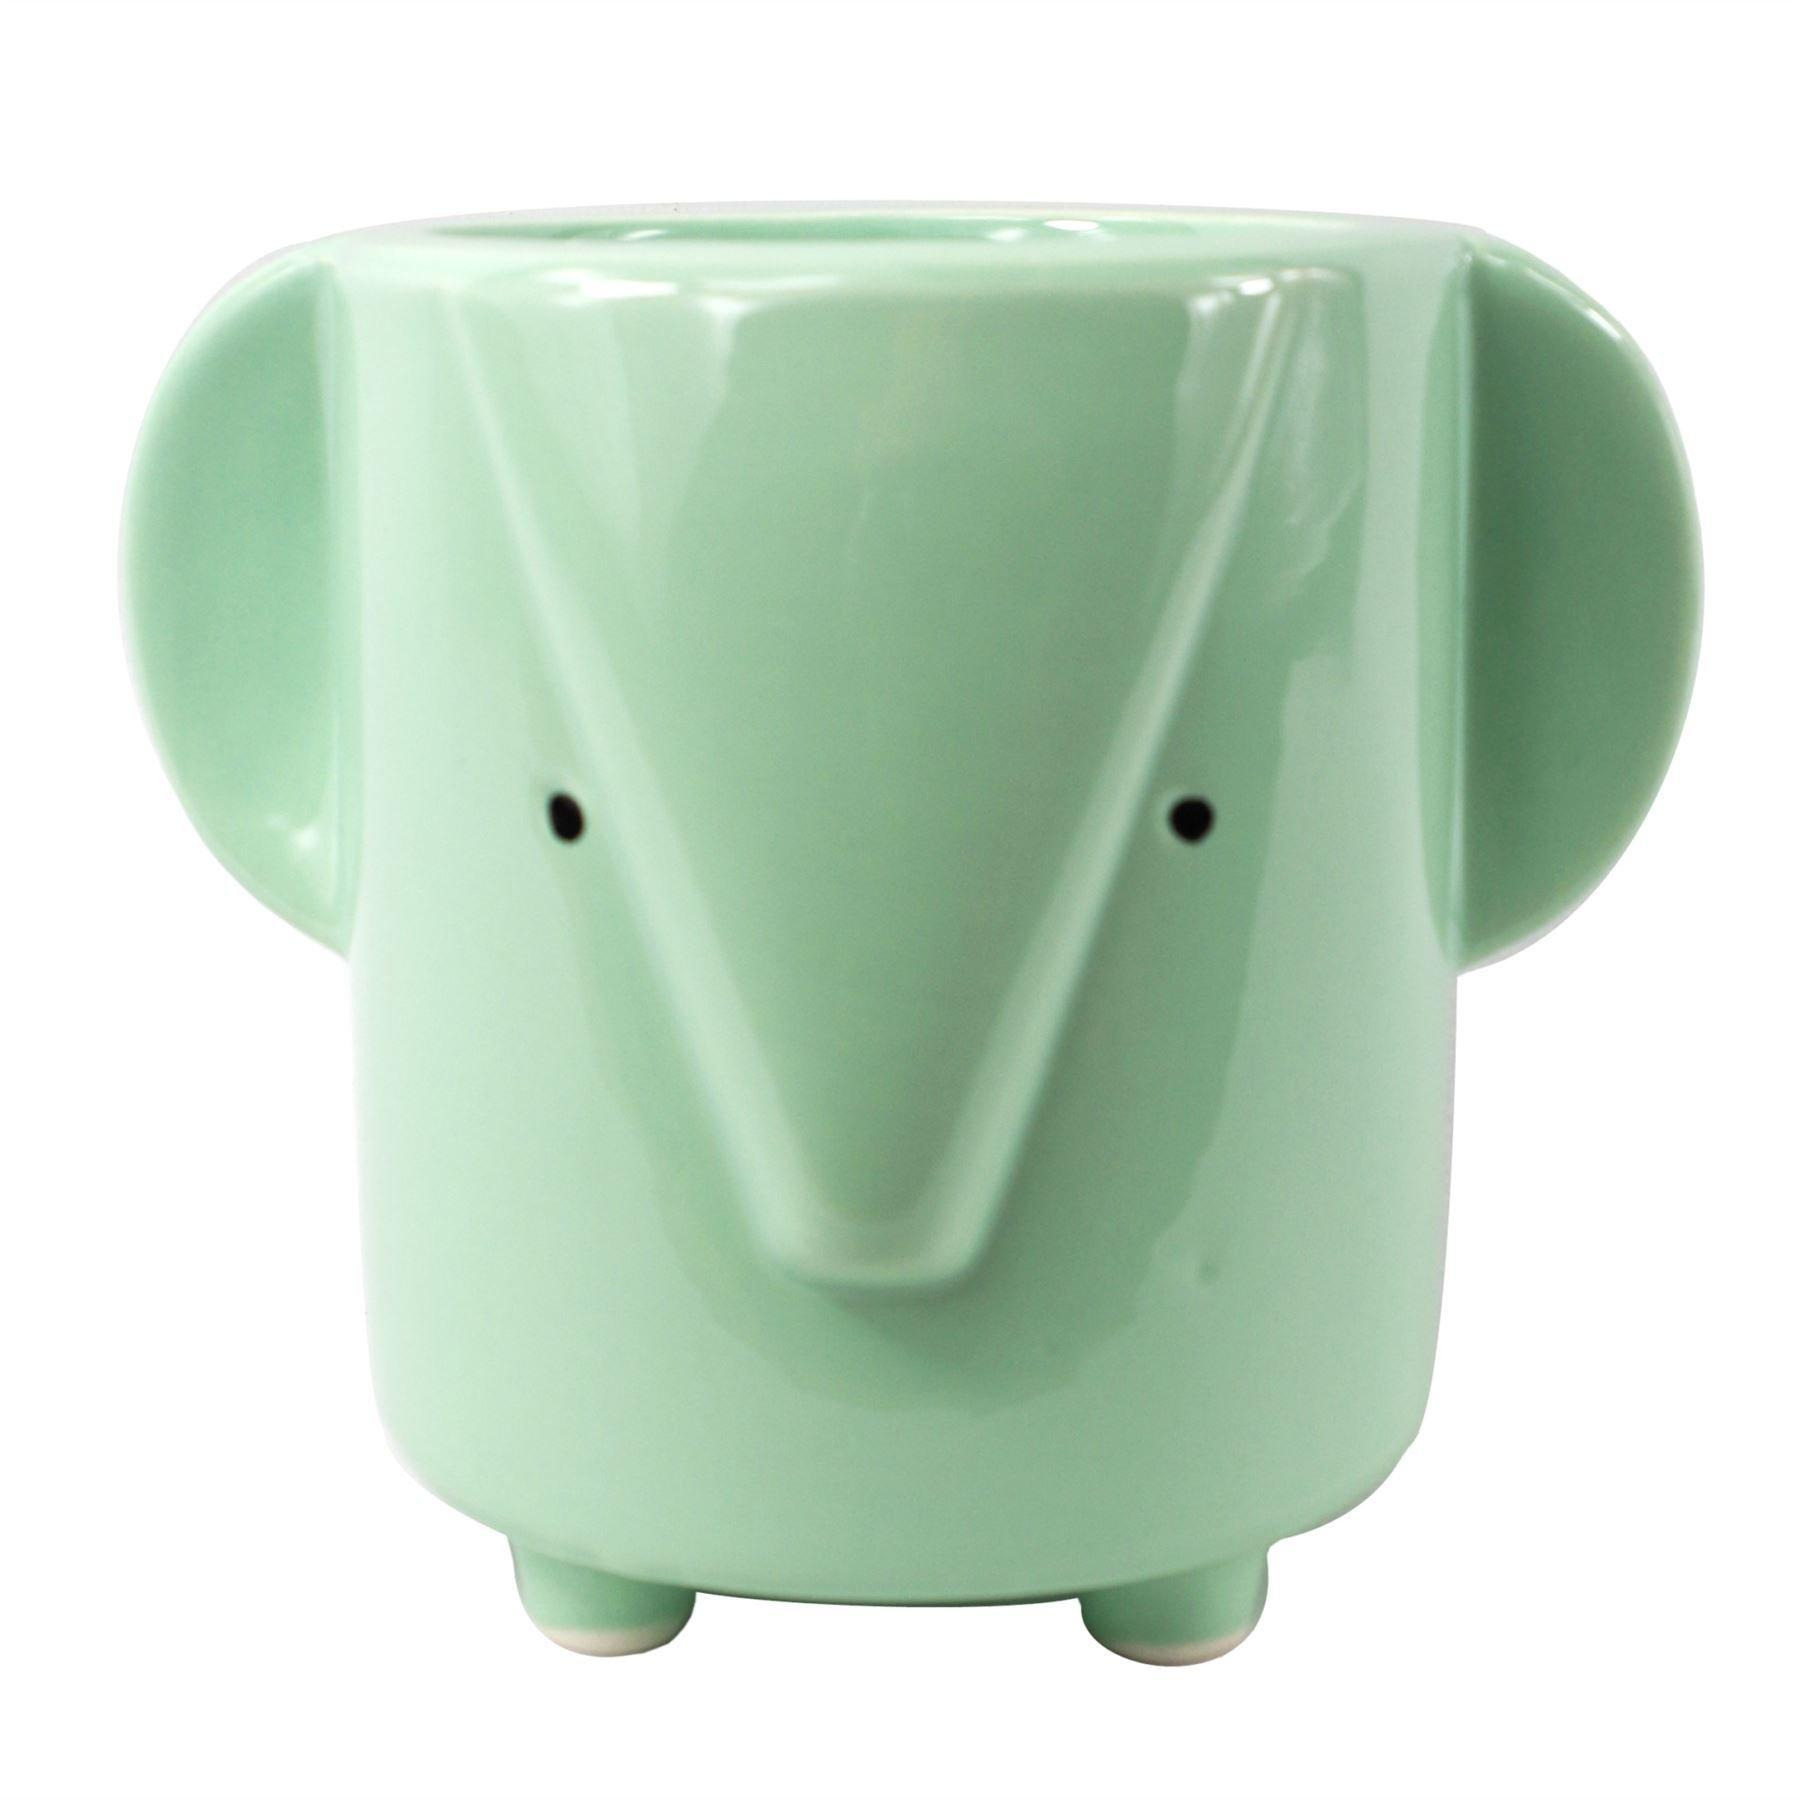 13cm Ceramic Blue Elephant Planter - image 1